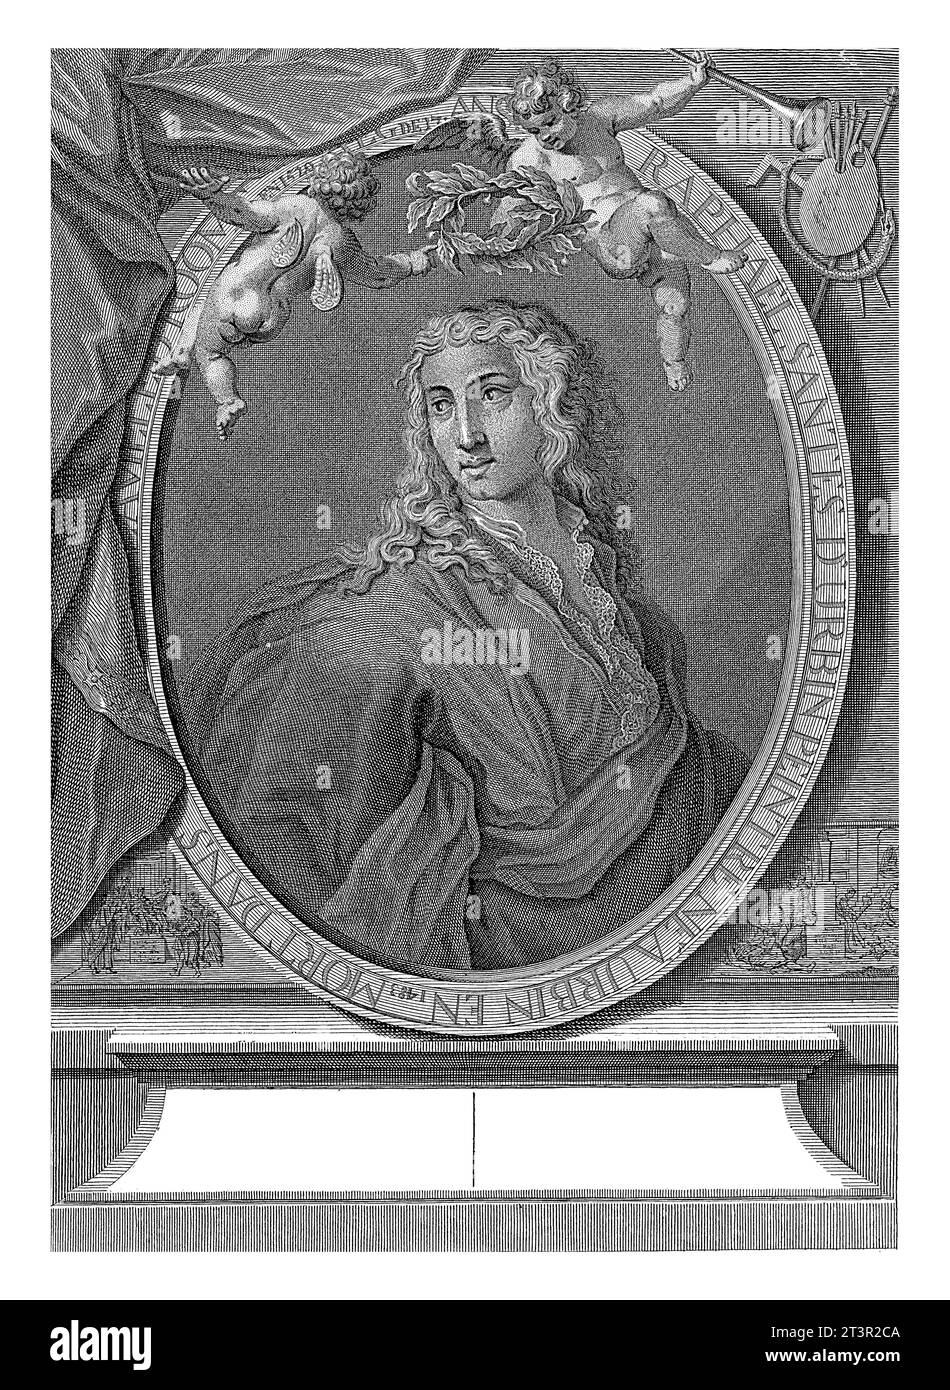 Allegorisches Porträt des Malers Raphael, Matthijs Pool, nach Raphael, 1732 allegorisches Porträt des Malers Raphael. Er wird von zwei Putten geehrt Stockfoto